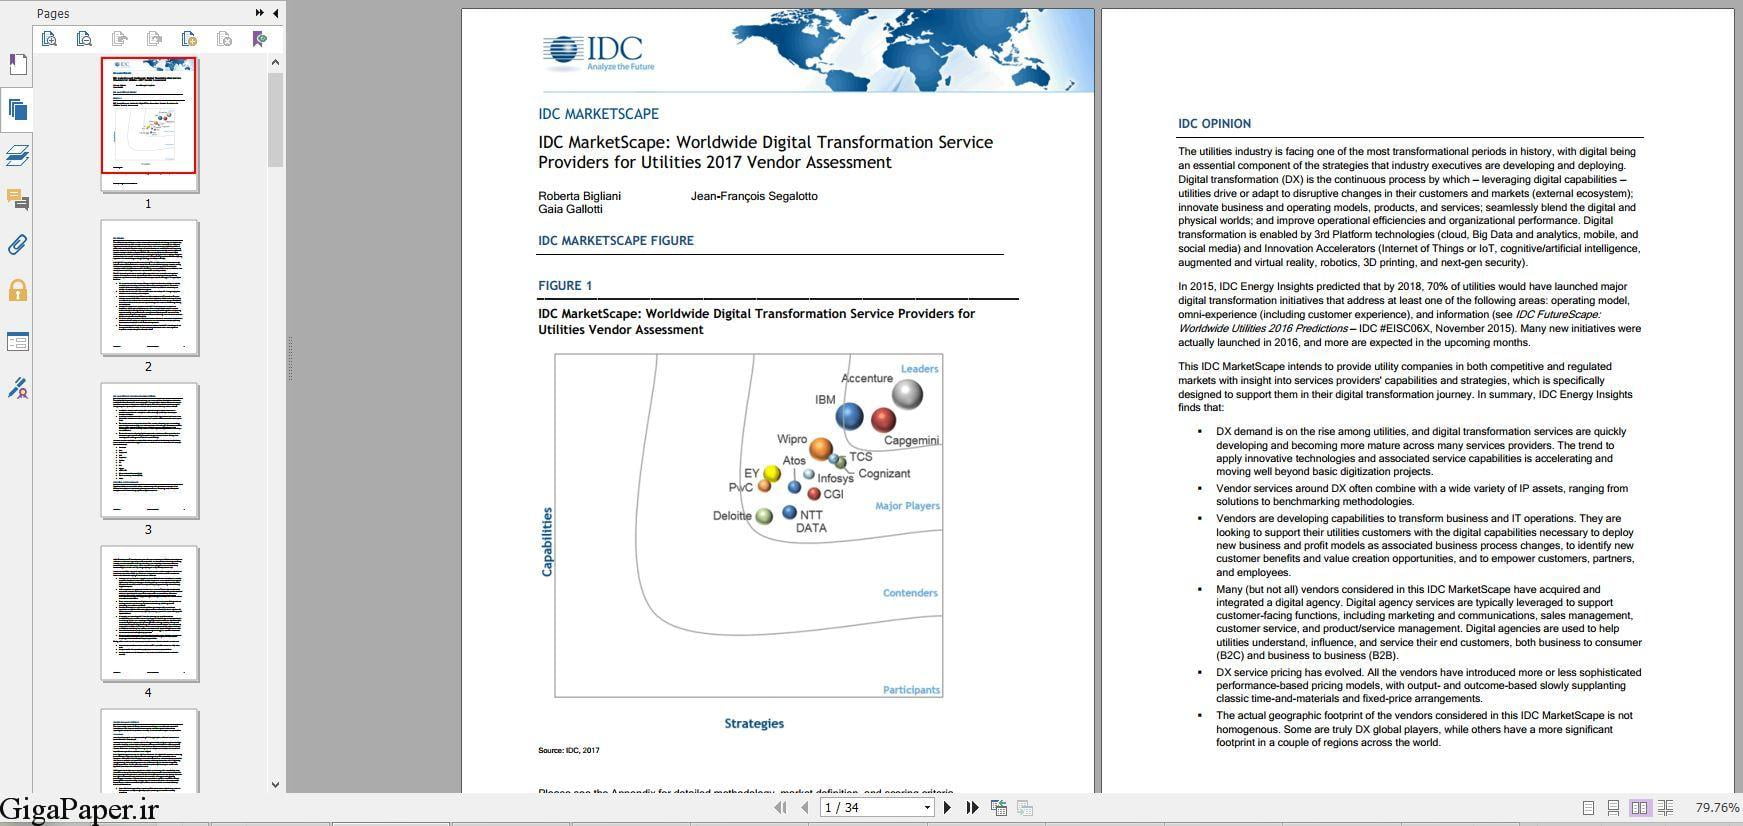 خرید گزارش IDC درباره IDC MarketScape Worldwide Digital Transformation Service دانلود گزارشات IDC تهیه بروزترين گزارشهای IDC در کلیه موضوعات و حوزه ها گیگاپیپر